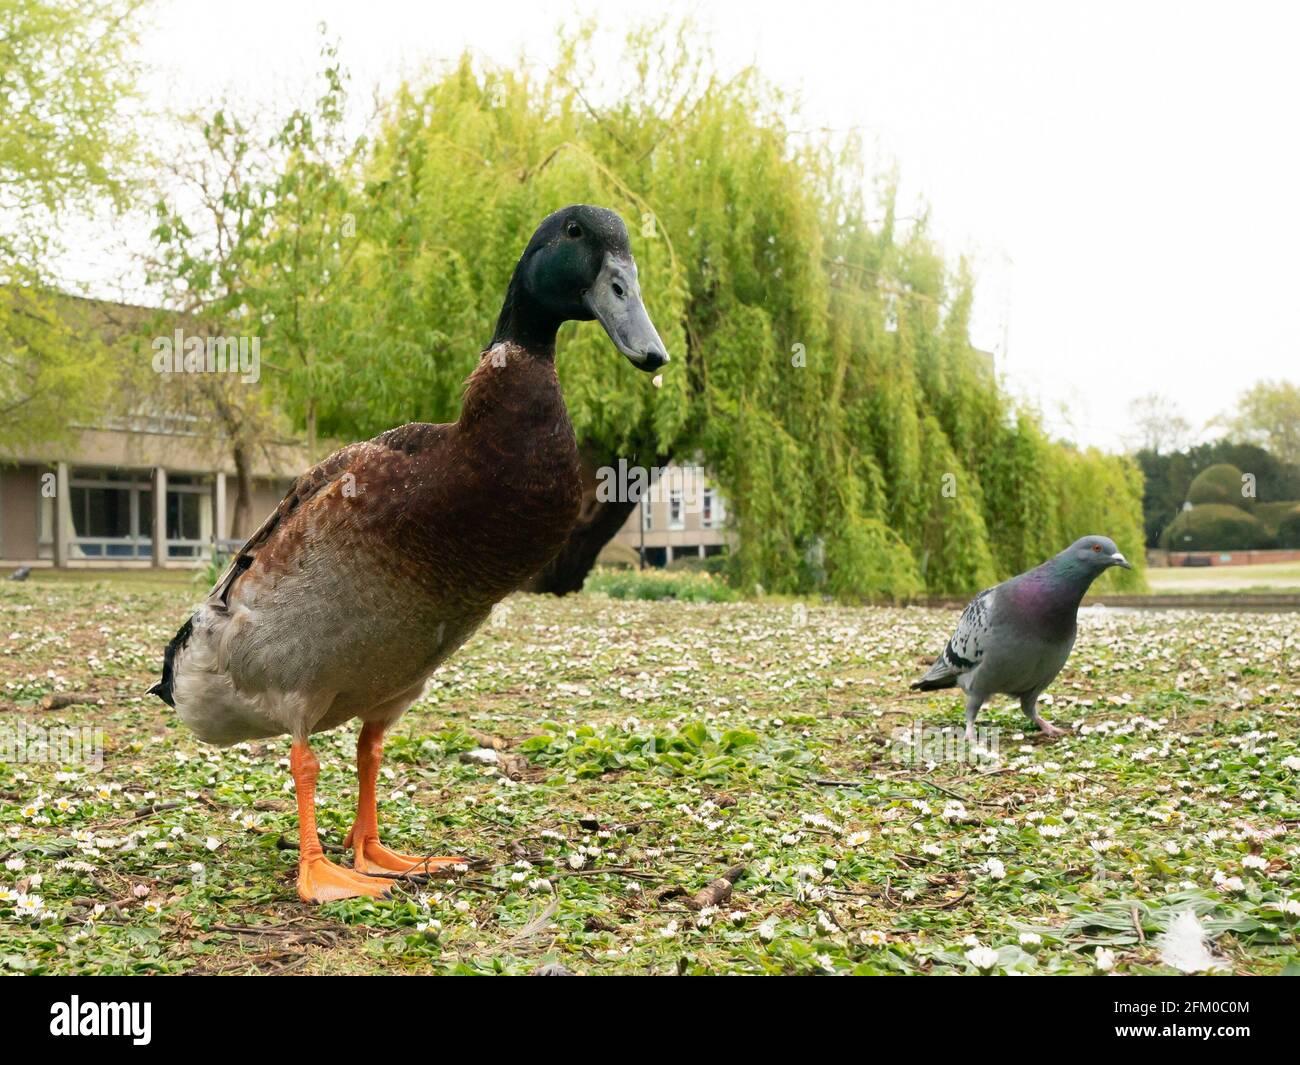 Die York University Ente namens Long Boi (links), die aufgrund seiner beeindruckenden Statur viral wurde. Es wird angenommen, dass die sehr große Ente eine Kreuzung zwischen einer Mallard- und einer Indian Runner-Ente ist. Bilddatum: Montag, 3. Mai 2021. Stockfoto